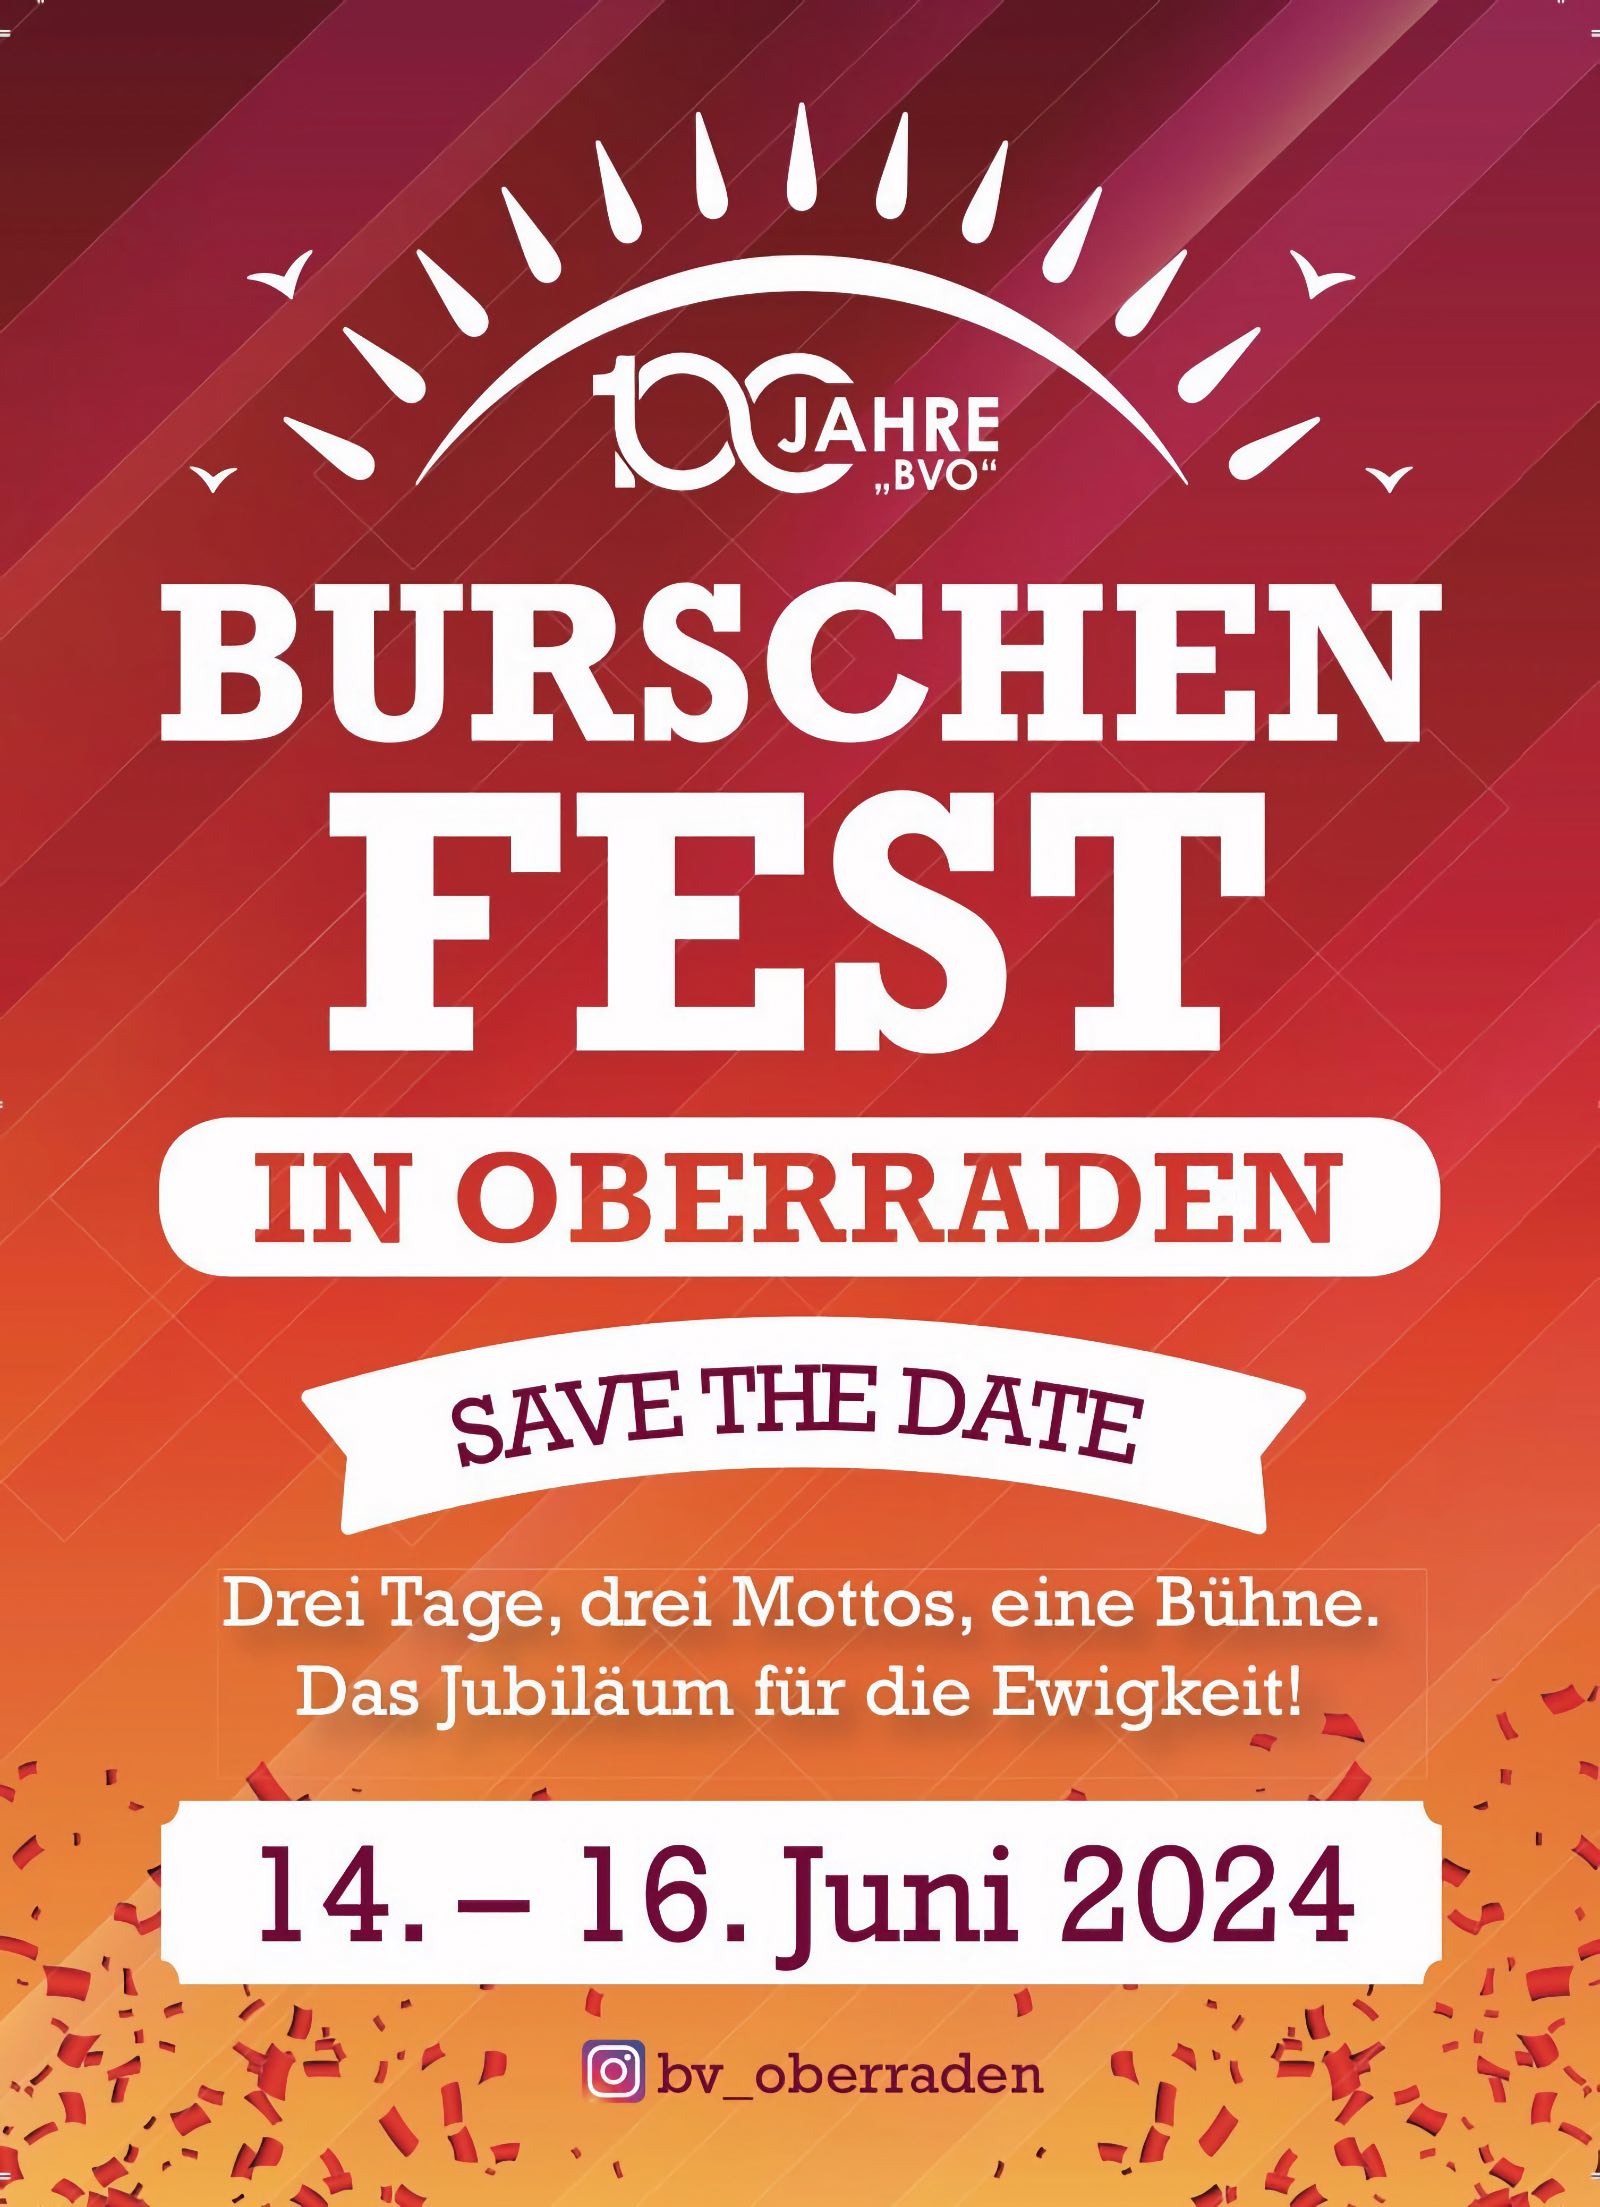 Burschenfest